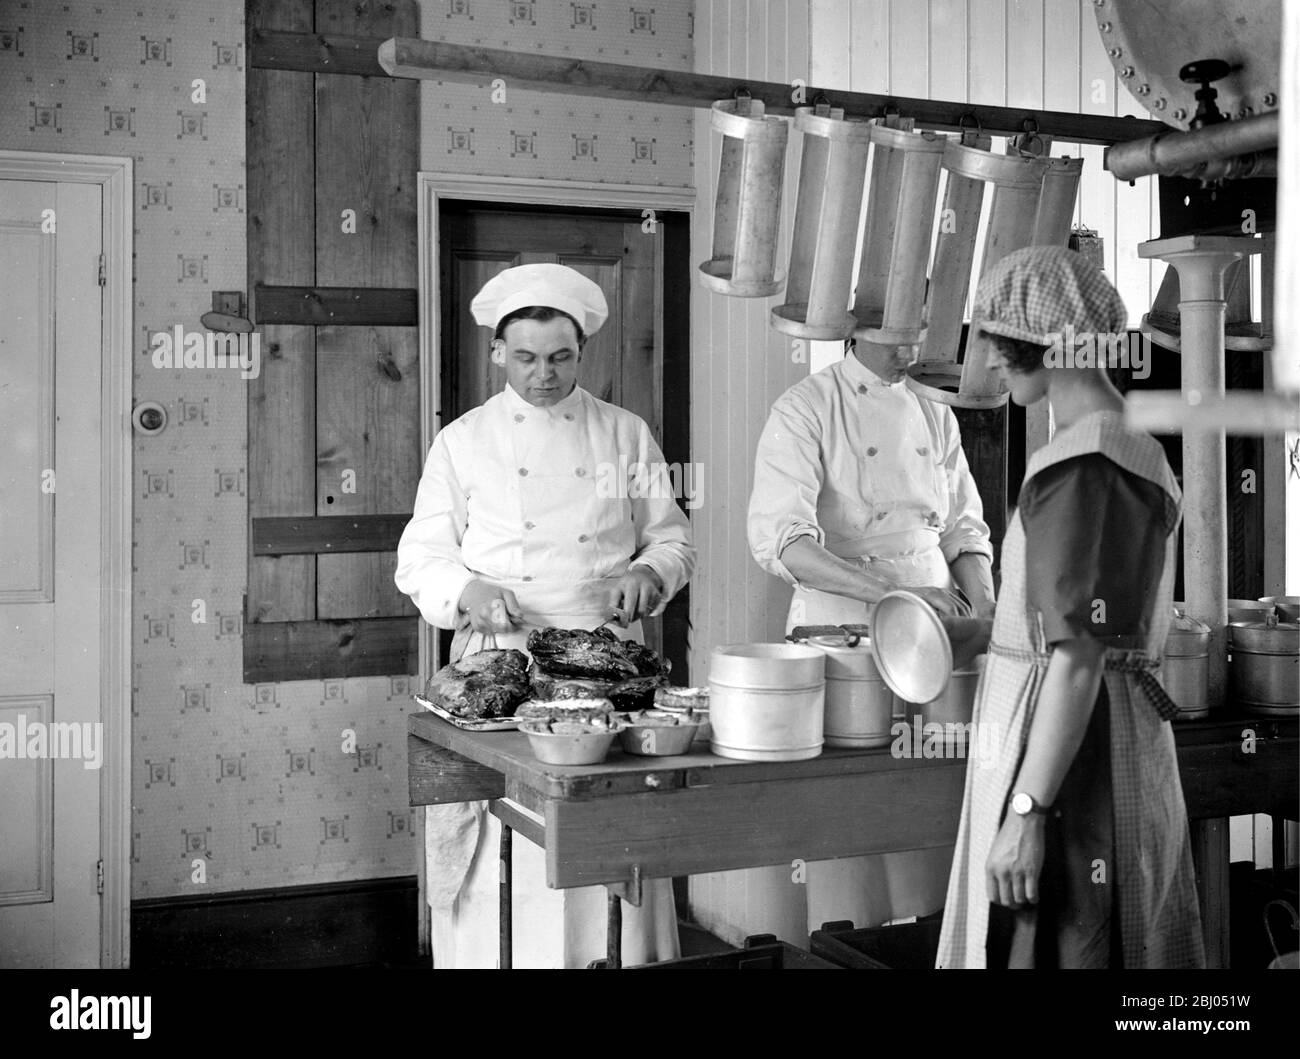 Mahlzeiten per Motor. - die Community Kitchen, Margate kocht warme Mahlzeiten und liefert sie an Urlauber Zimmer in Heißwasserbehältern . Fleisch schnitzen und Kanister füllen. - 20. Juli 1923 Stockfoto